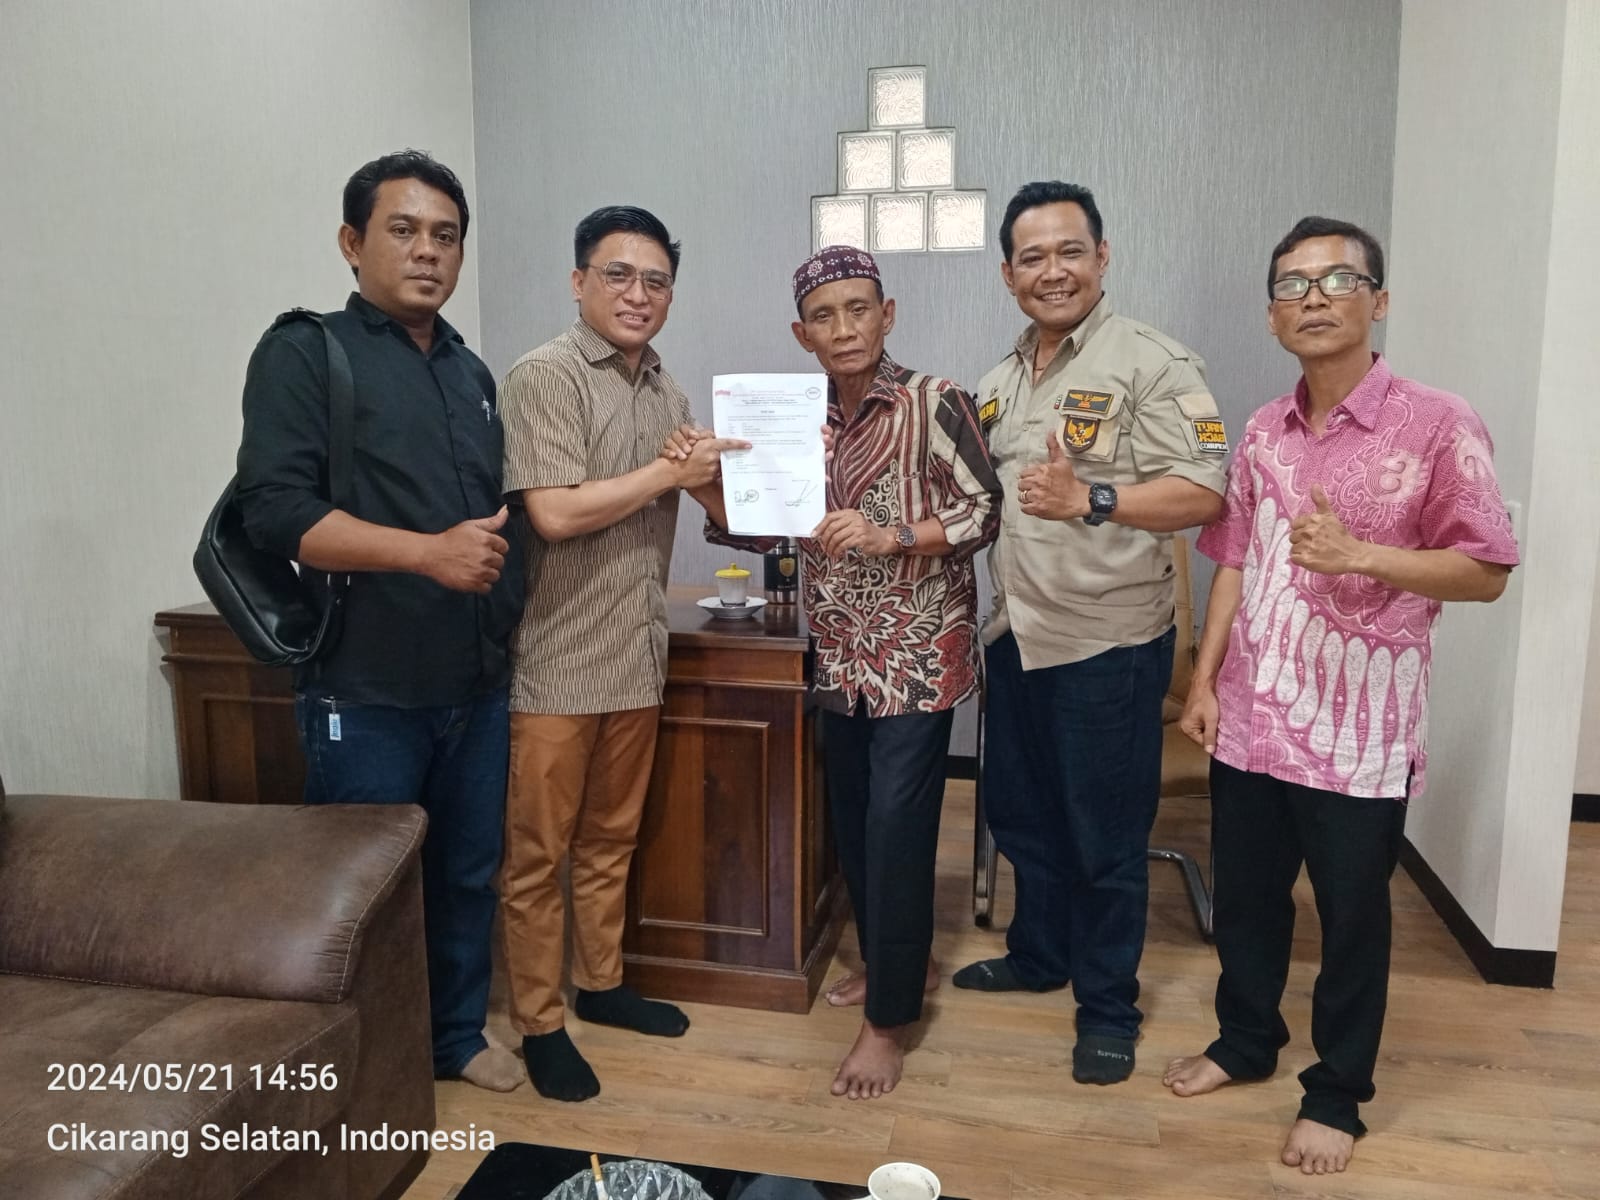 Hadirkan Pencerahan Kepemimpinan di Kabupaten Bekasi, Diskusi Publik Bersama Tokoh Nasional Siap Digelar TKN Merah Putih Bersama AWIBB